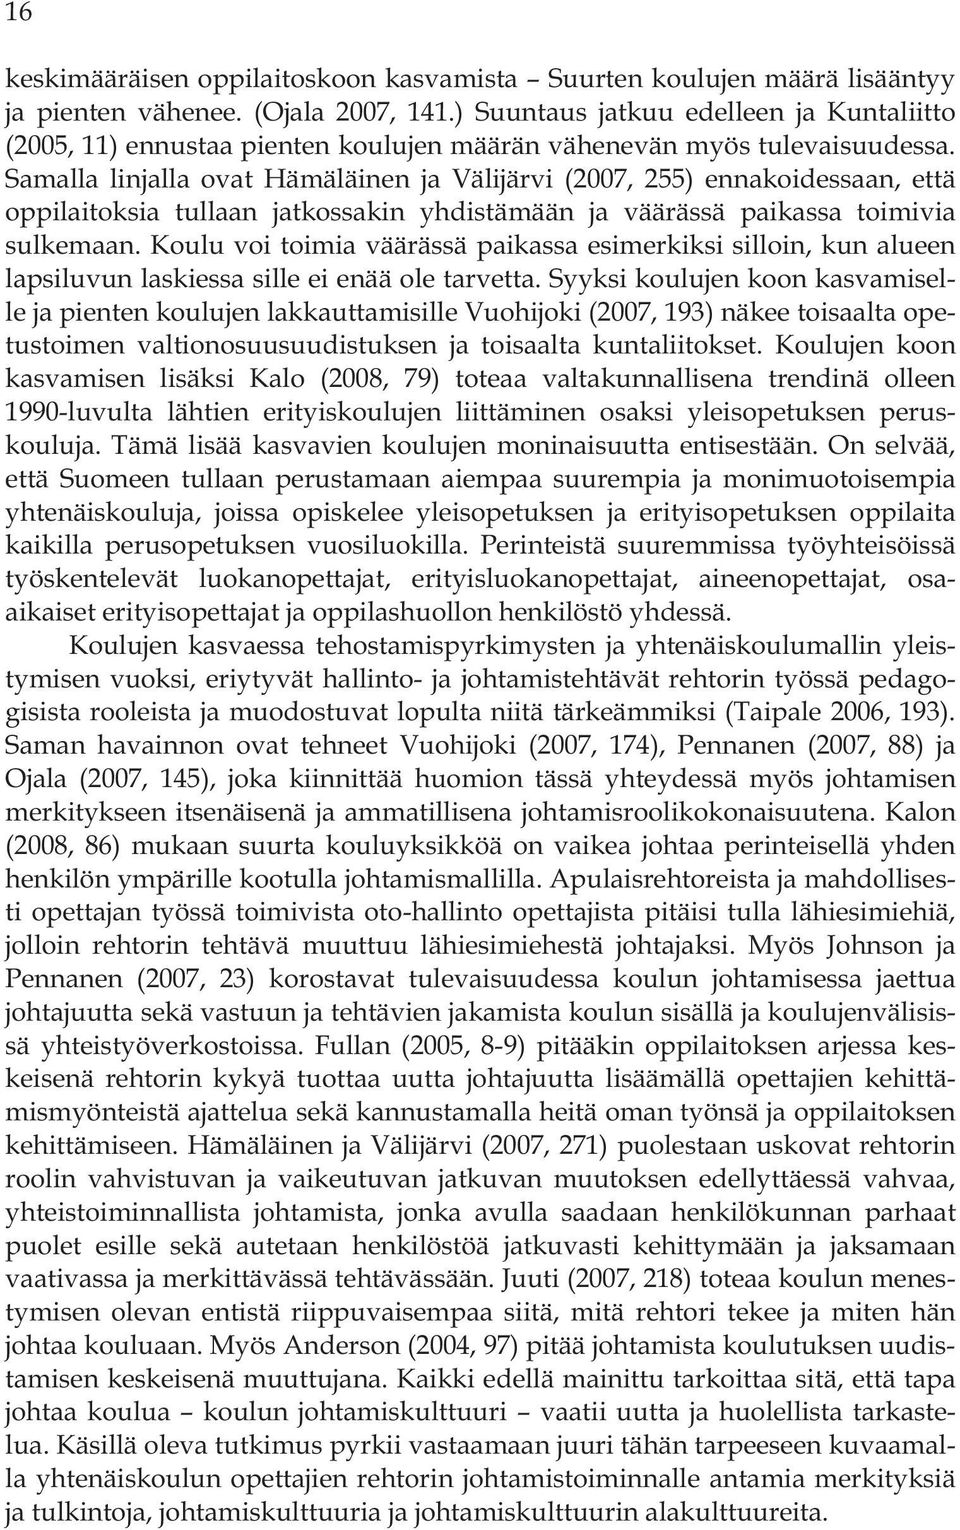 Samalla linjalla ovat Hämäläinen ja Välijärvi (2007, 255) ennakoidessaan, että oppilaitoksia tullaan jatkossakin yhdistämään ja väärässä paikassa toimivia sulkemaan.